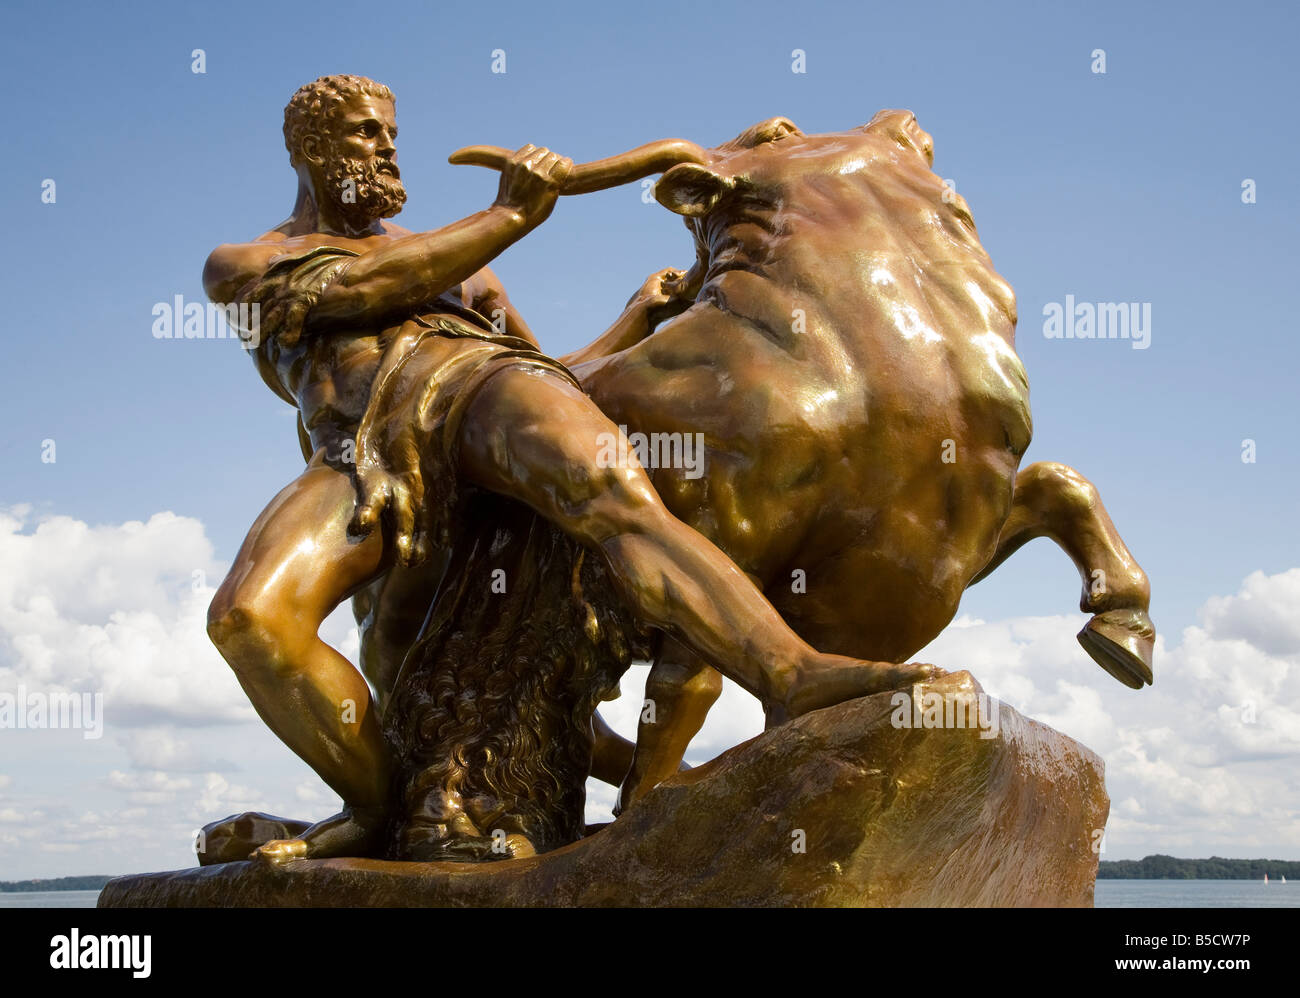 Statua dorata di Ercole wrestling a Bull nel parco del Castello di Schwerin Germania Foto Stock